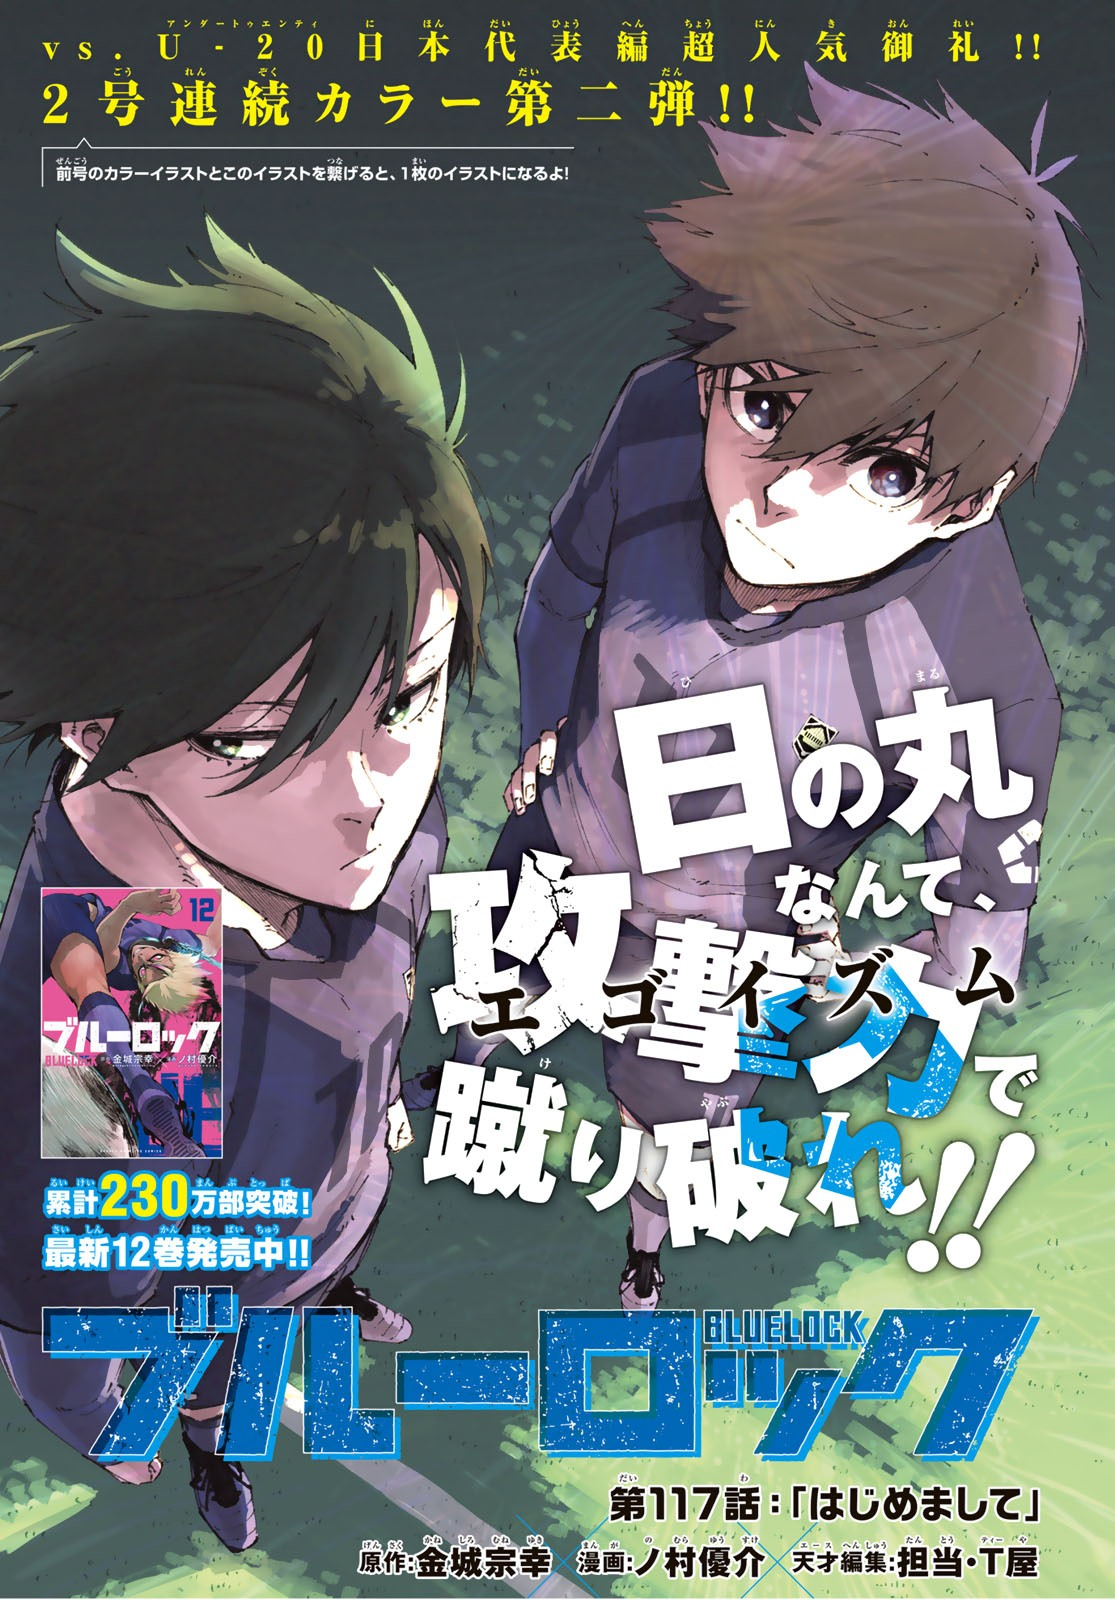 Blue Lock (Manga), Blue Lock Wiki, Fandom